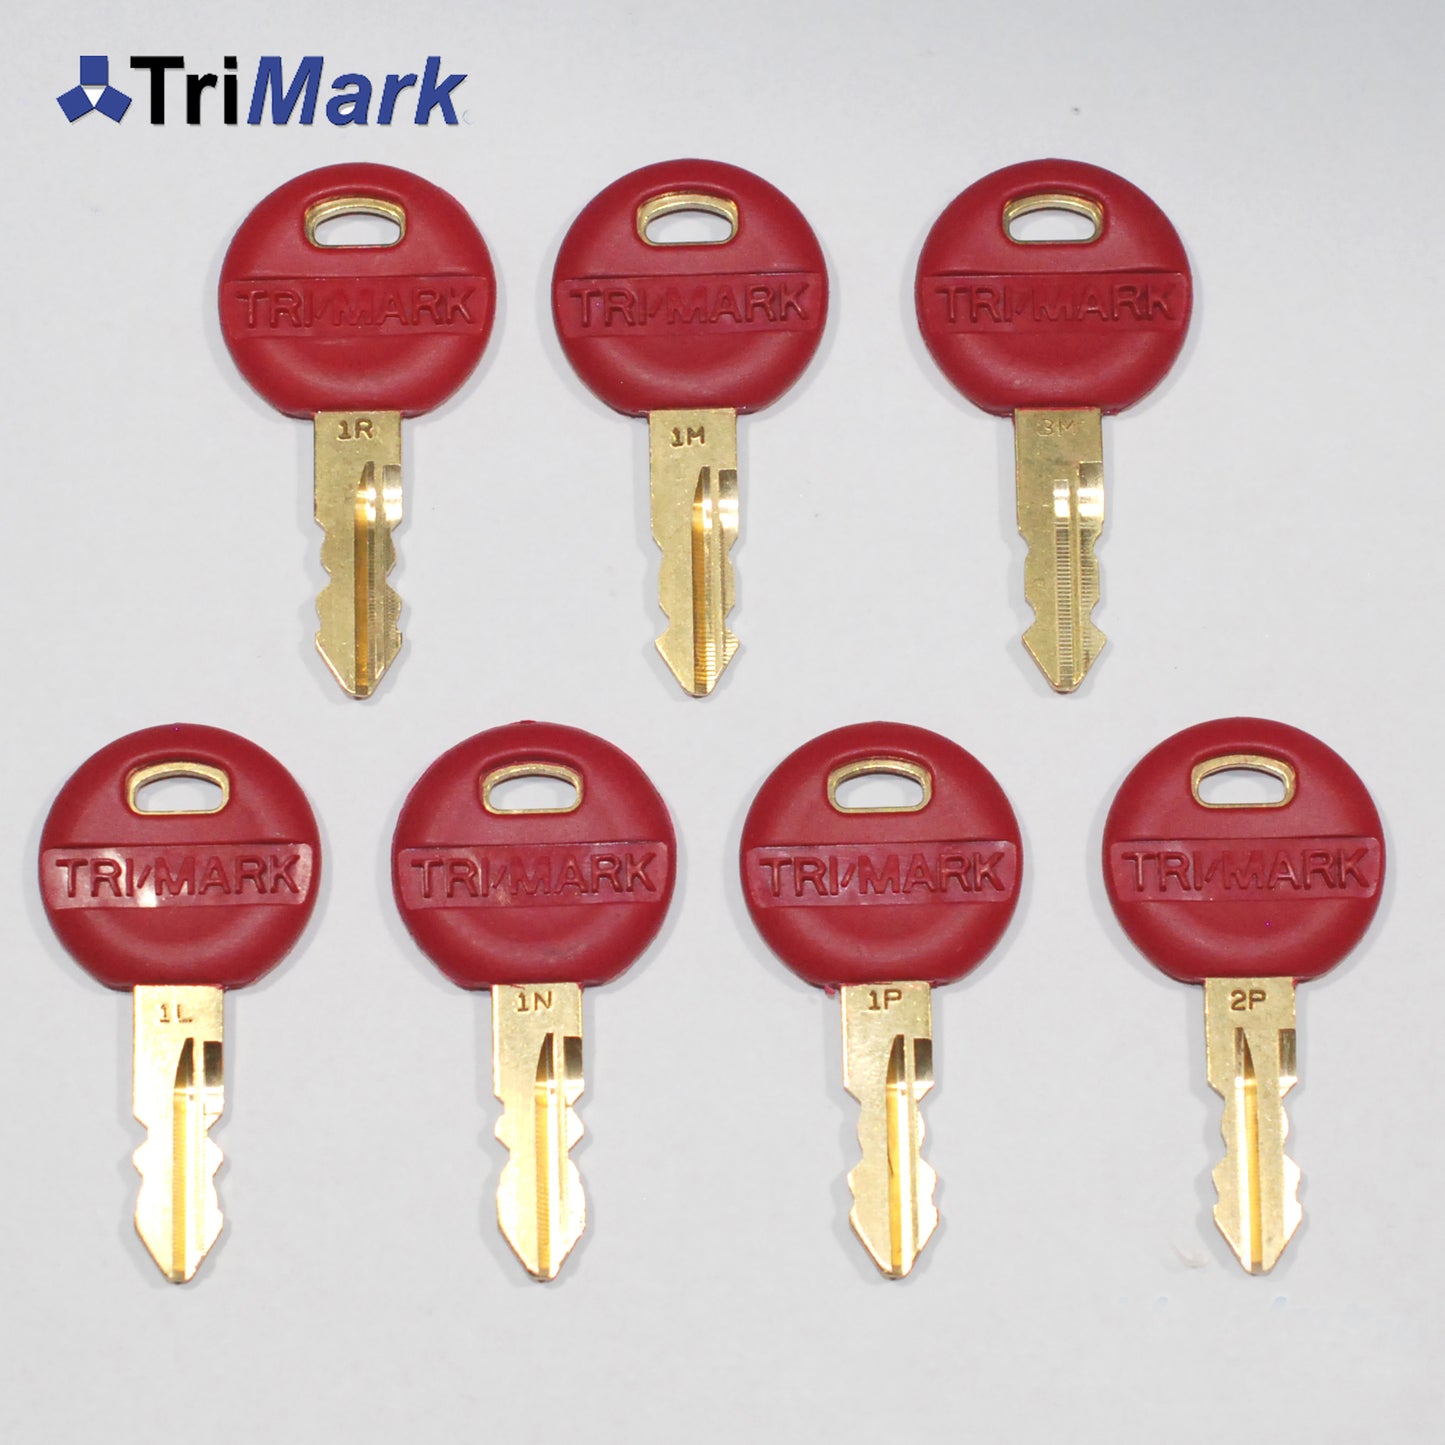 7 Trimark Master Keys ~ Letters 1P, 1R, 1M, 3M, 1N, 2P, 1L ~ RV Motor Home Camper